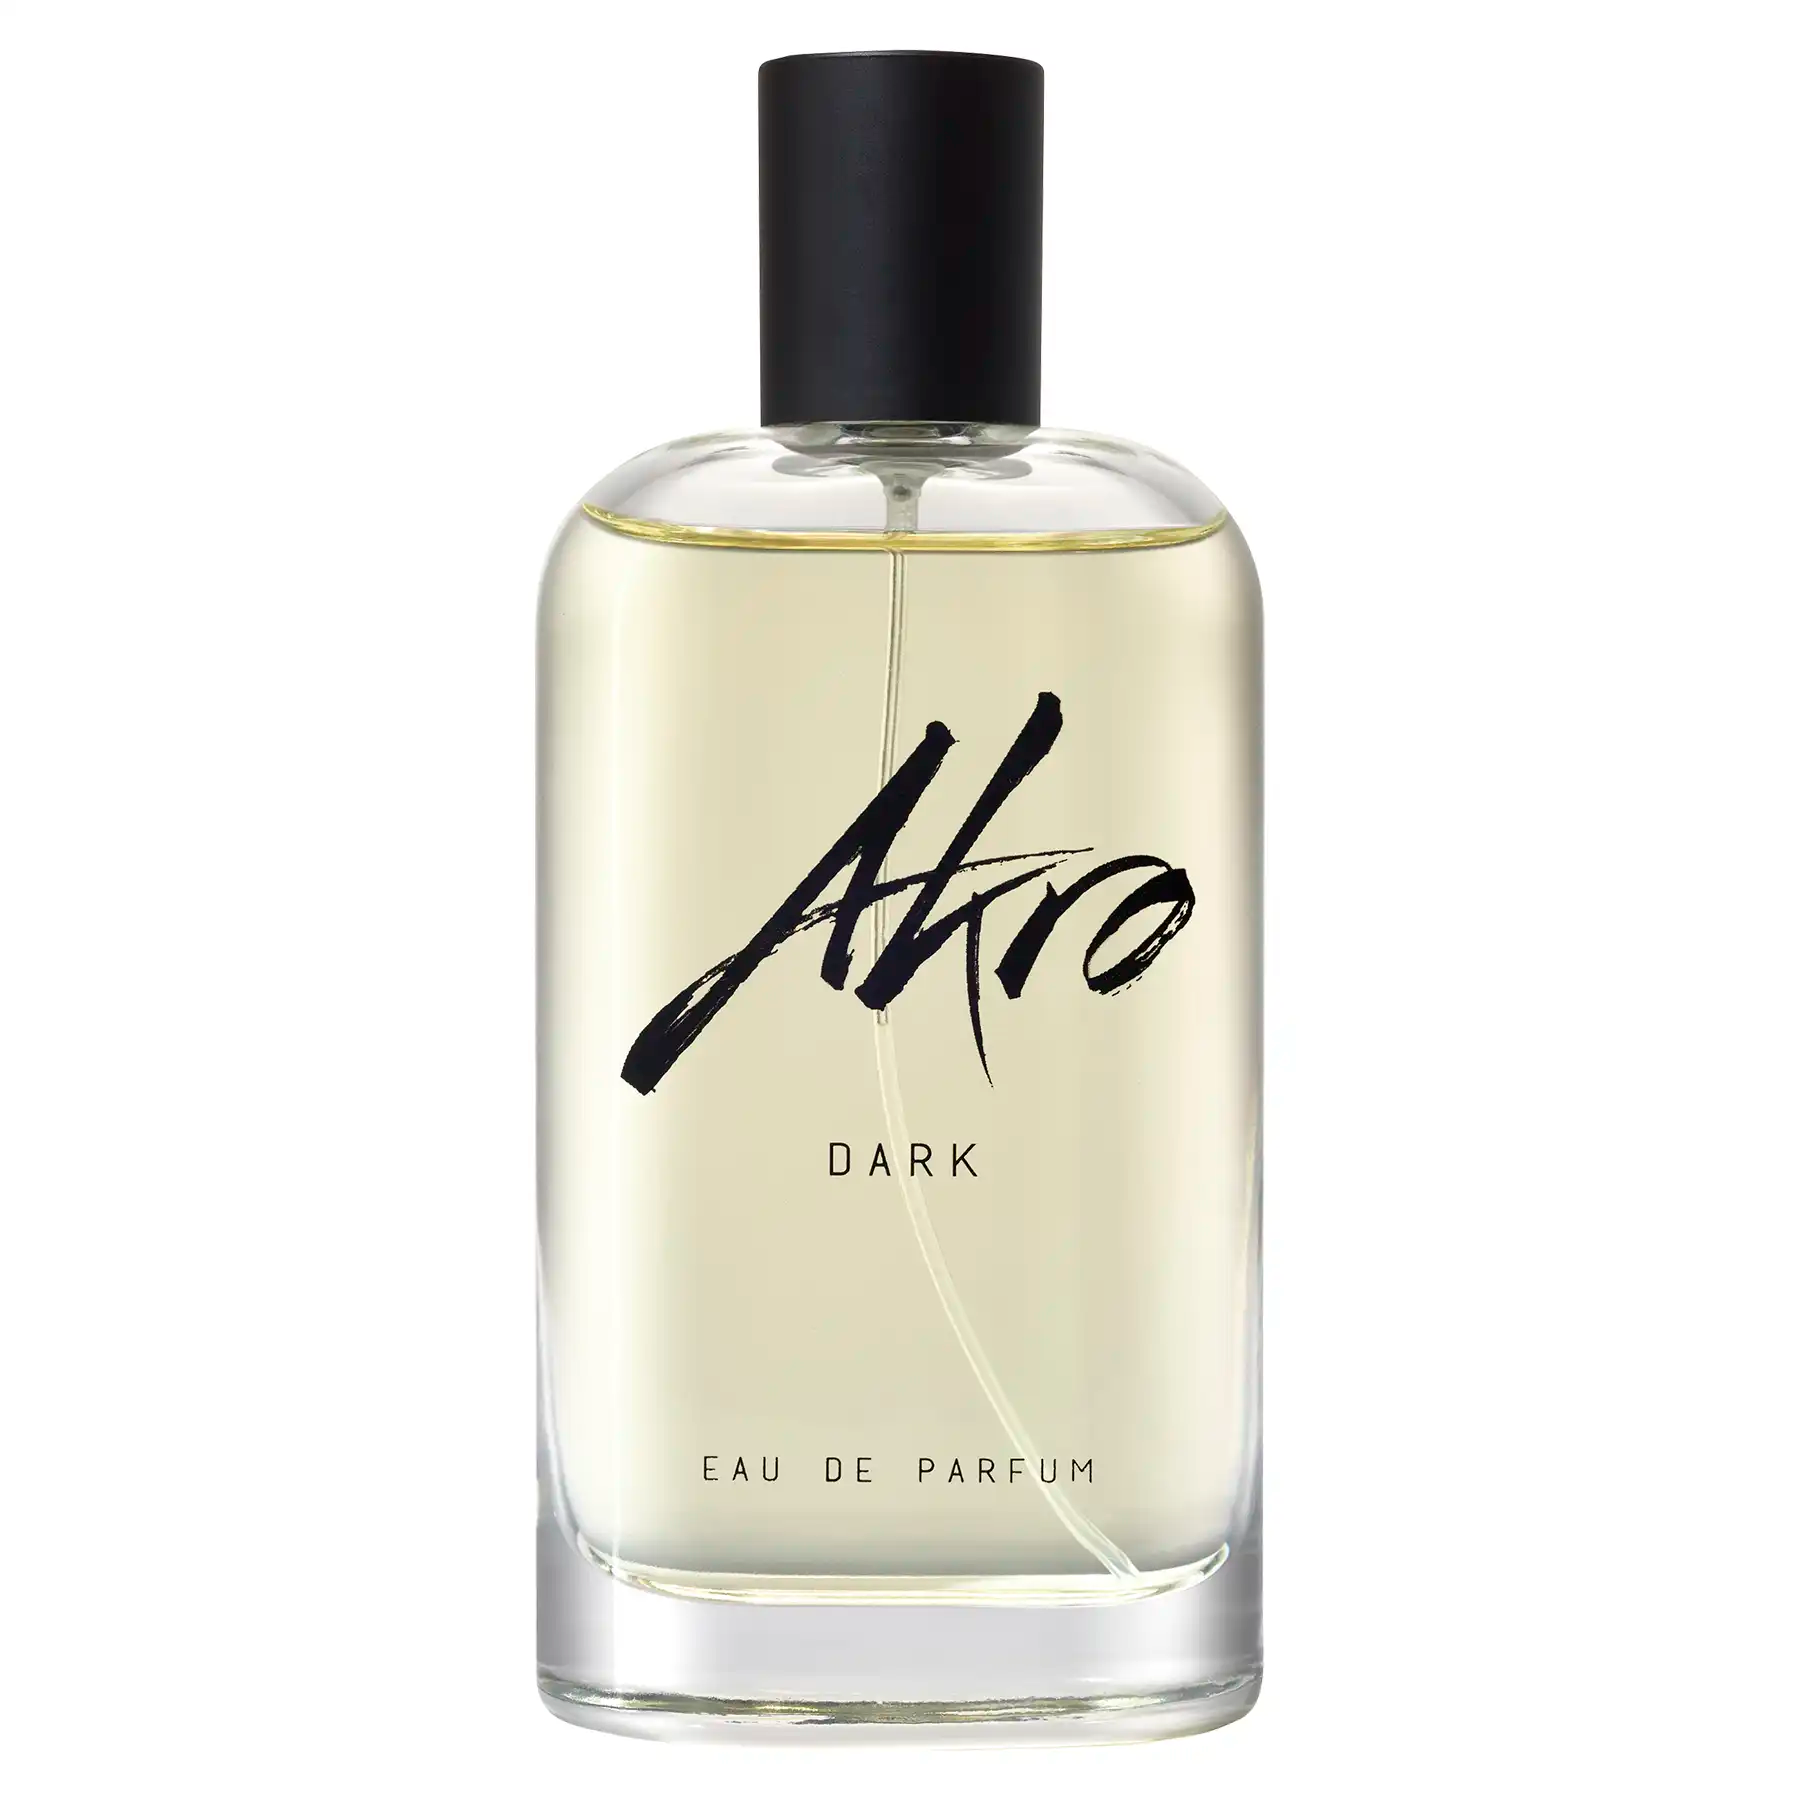 Akro Dark Eau de Parfum 100ml